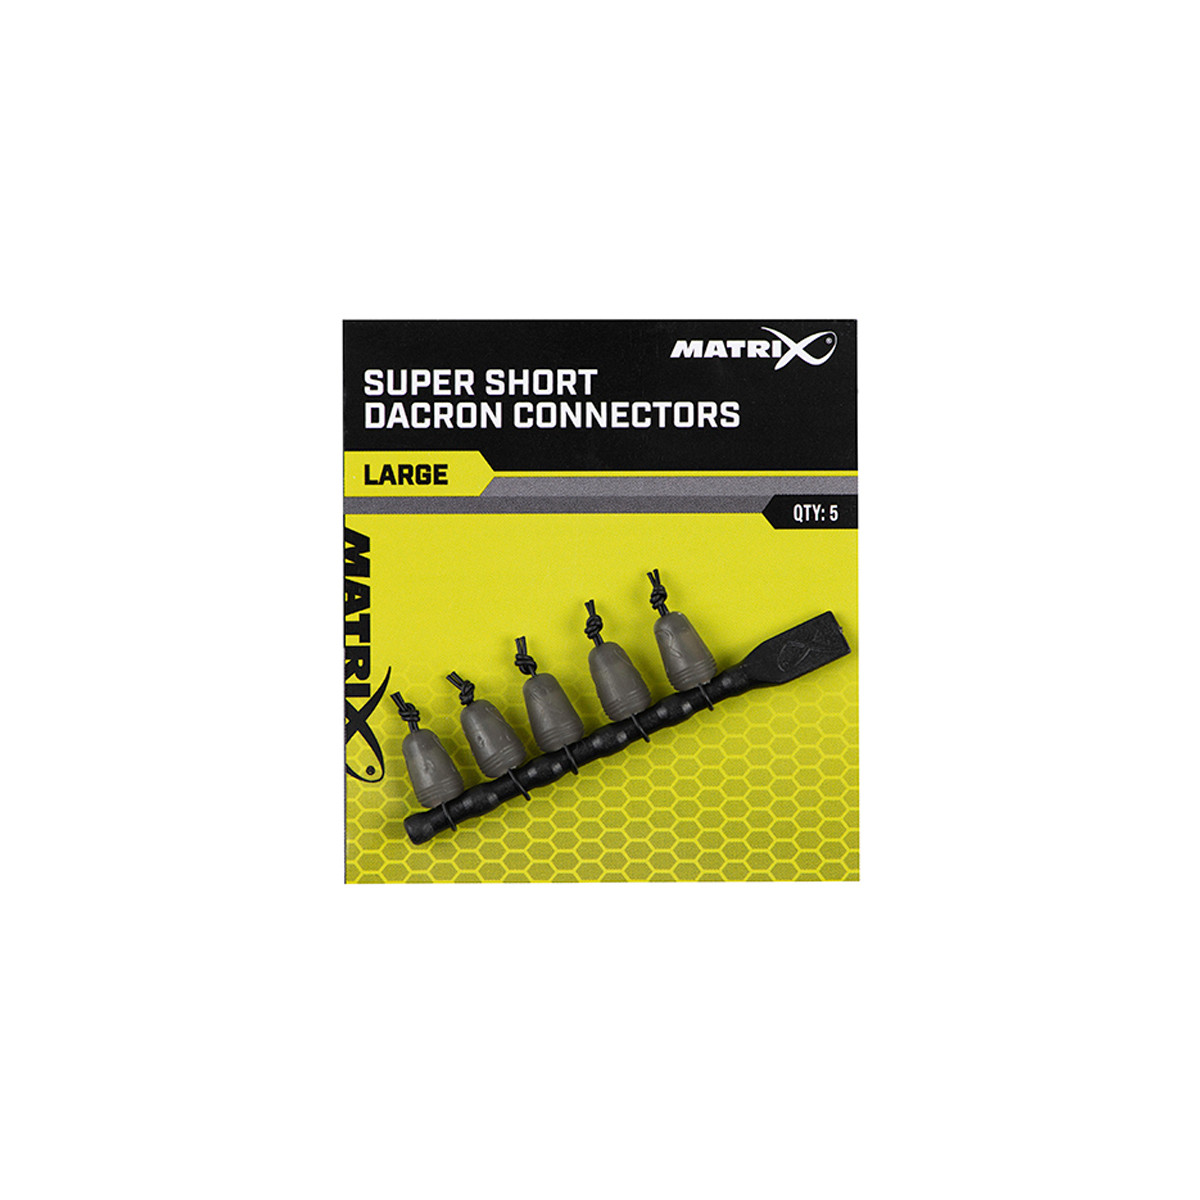 MATRIX SUPER SHORT DACRON CONNECTORS